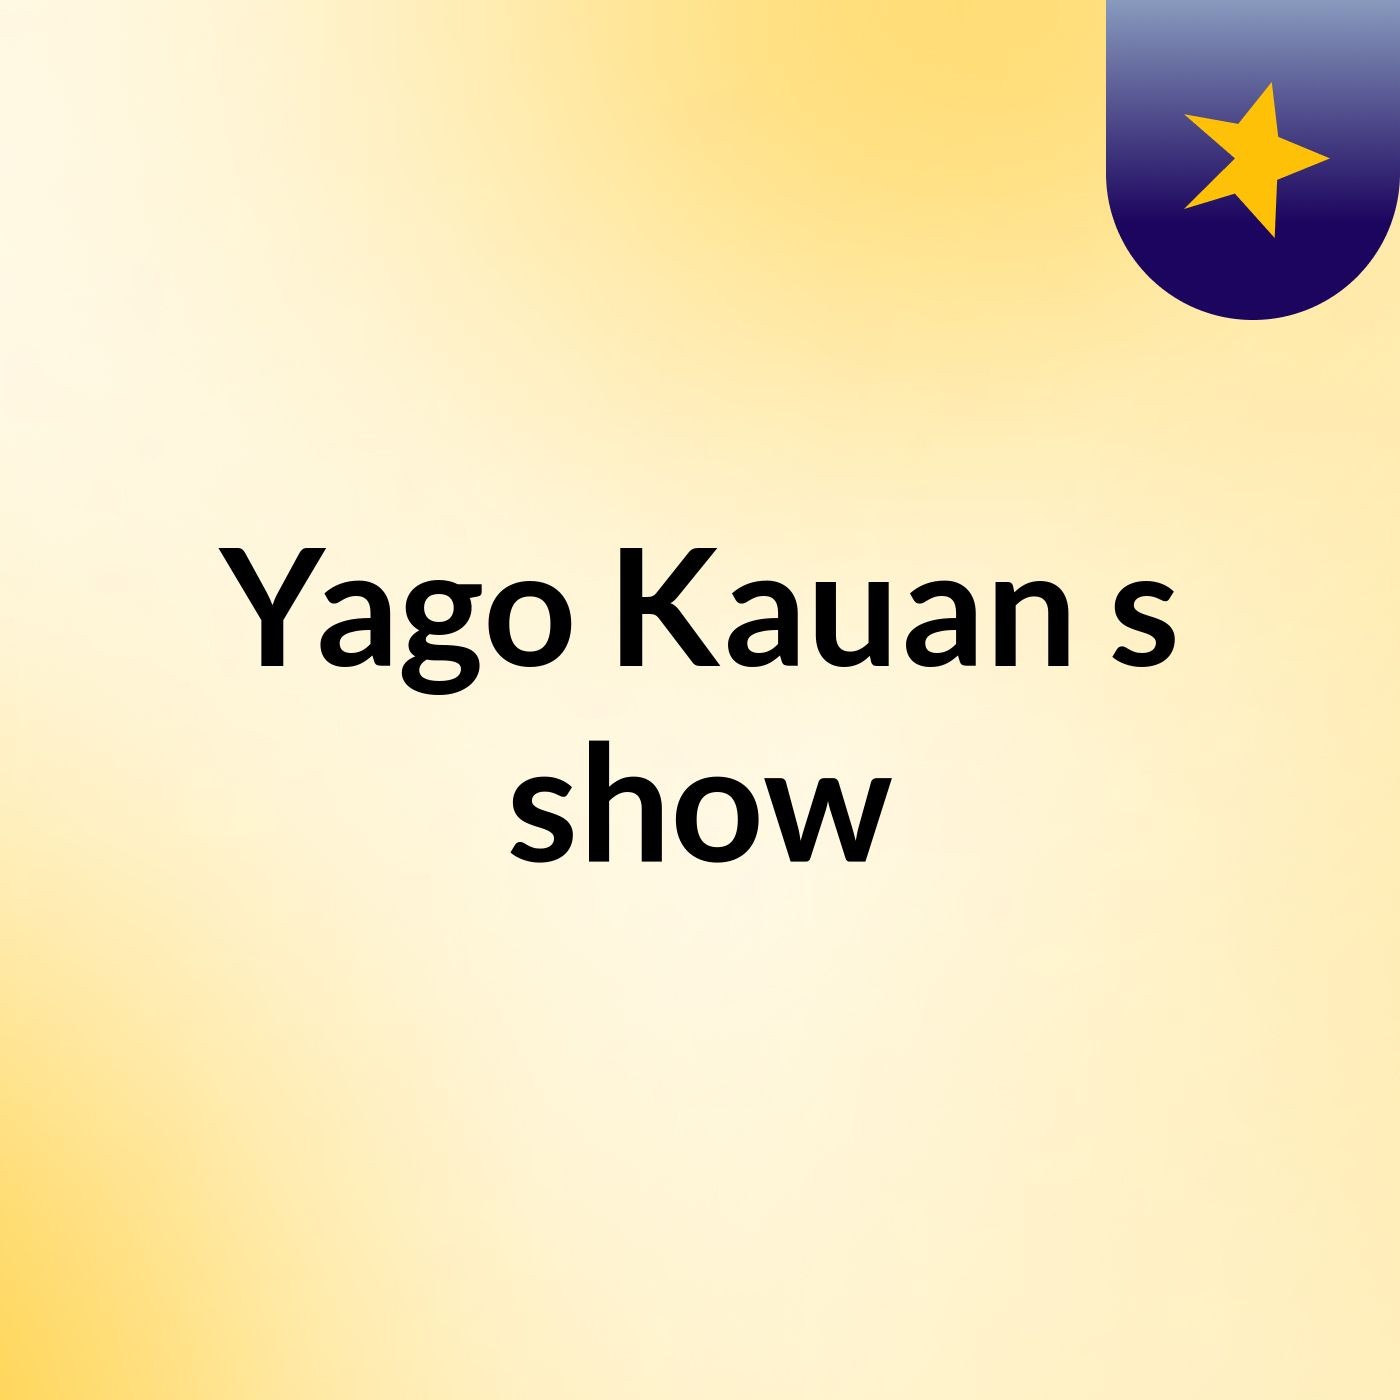 Yago Kauan's show